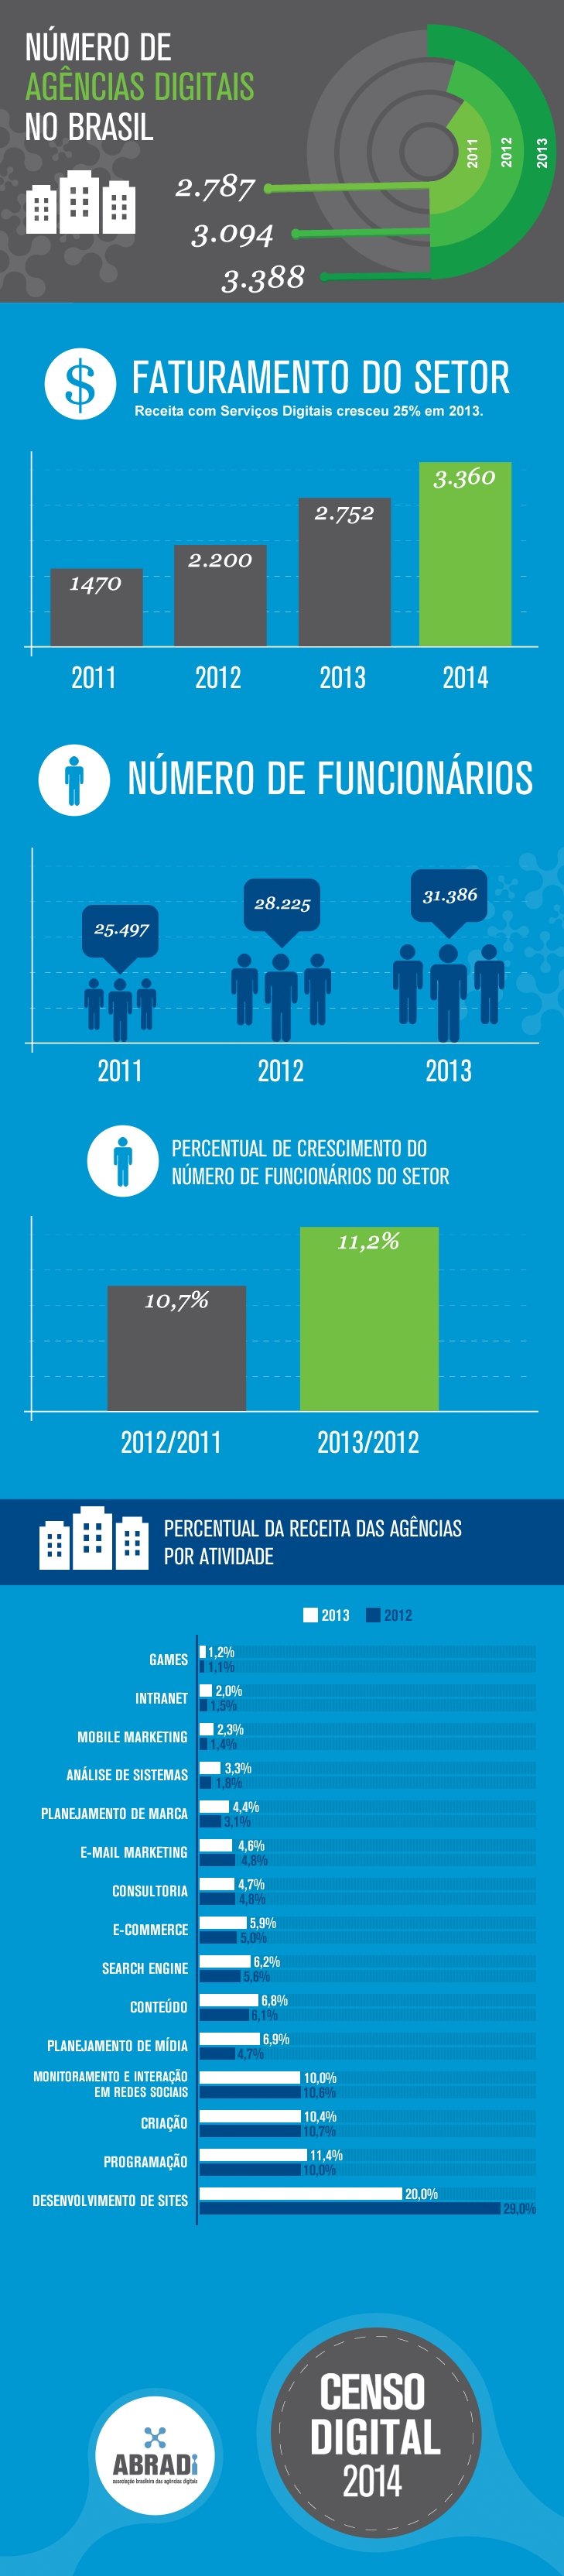 Infográfico: Censo digital revela expansão dos negócios de Agências Digitais